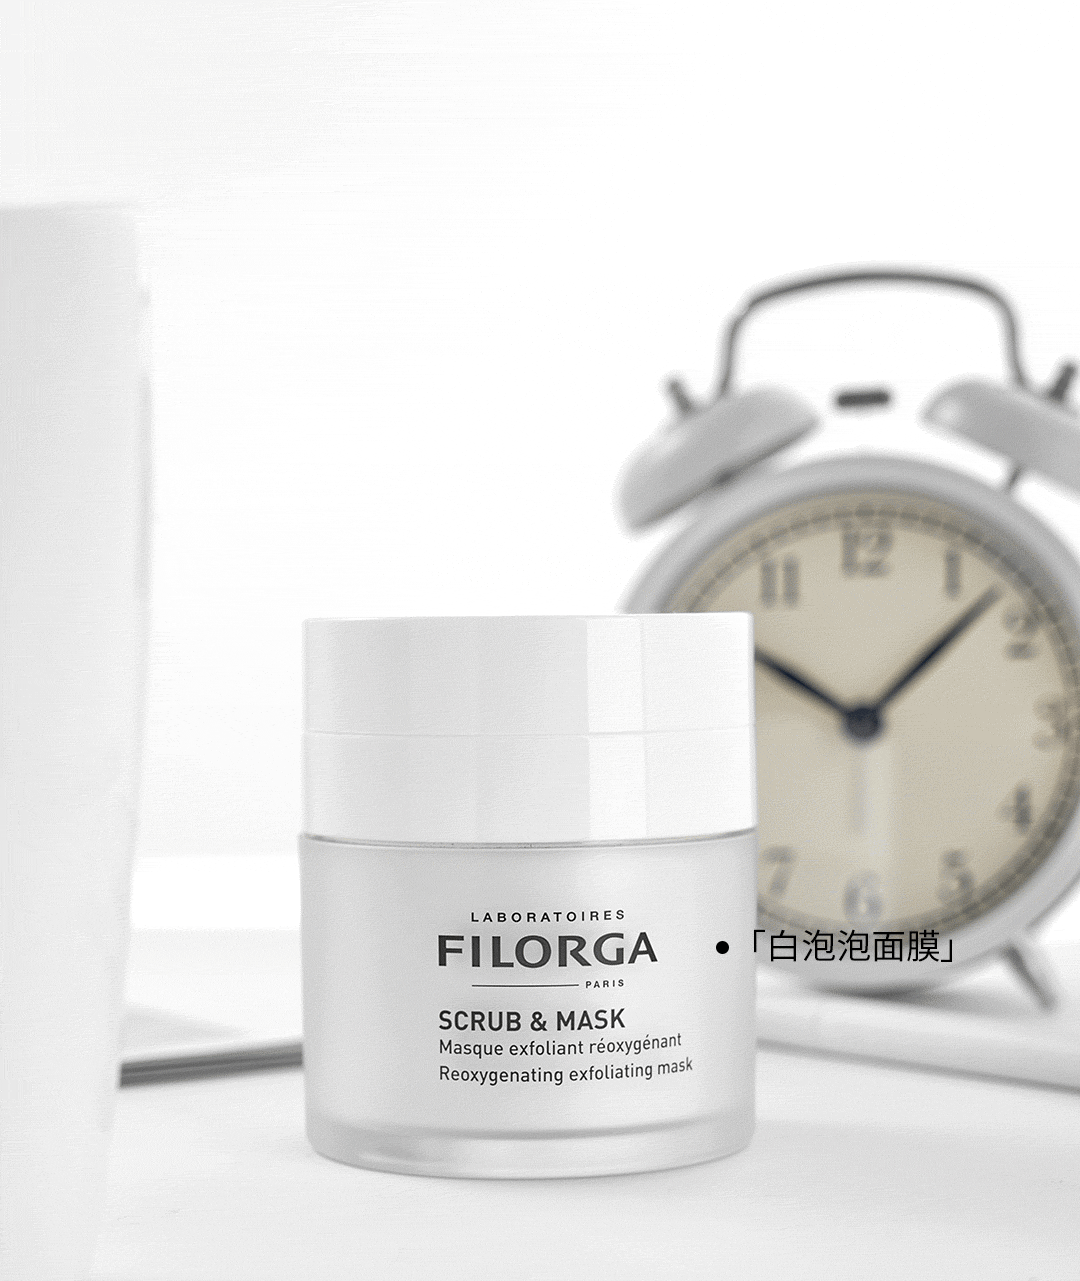 Filorga 菲洛嘉 白泡泡面膜 深层清洁 清除老废角质、补水、焕亮